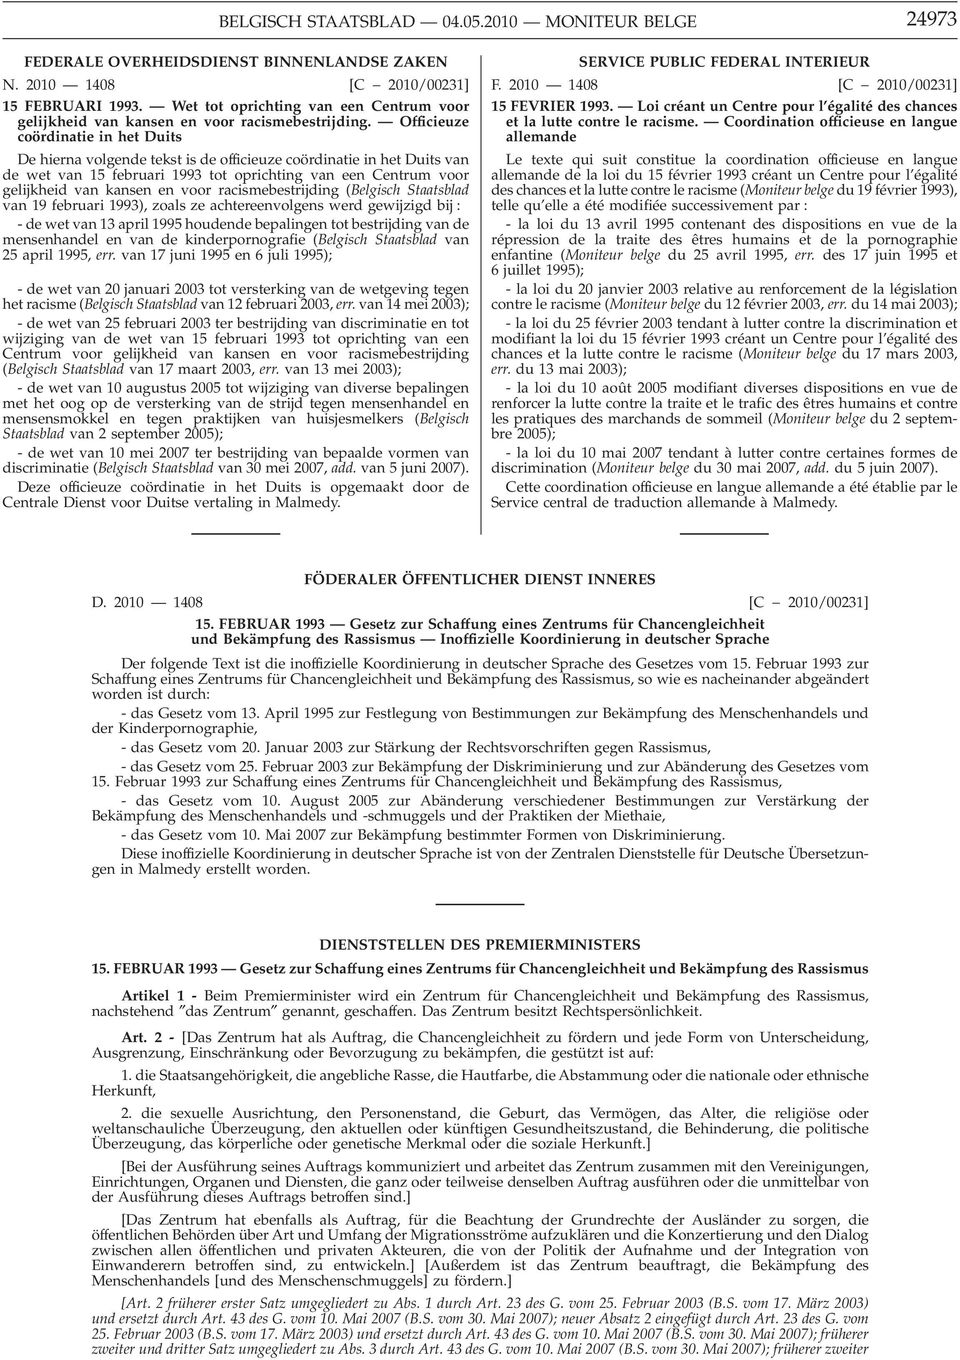 Officieuze coördinatie in het Duits De hierna volgende tekst is de officieuze coördinatie in het Duits van de wet van 15 februari 1993 tot oprichting van een Centrum voor gelijkheid van kansen en